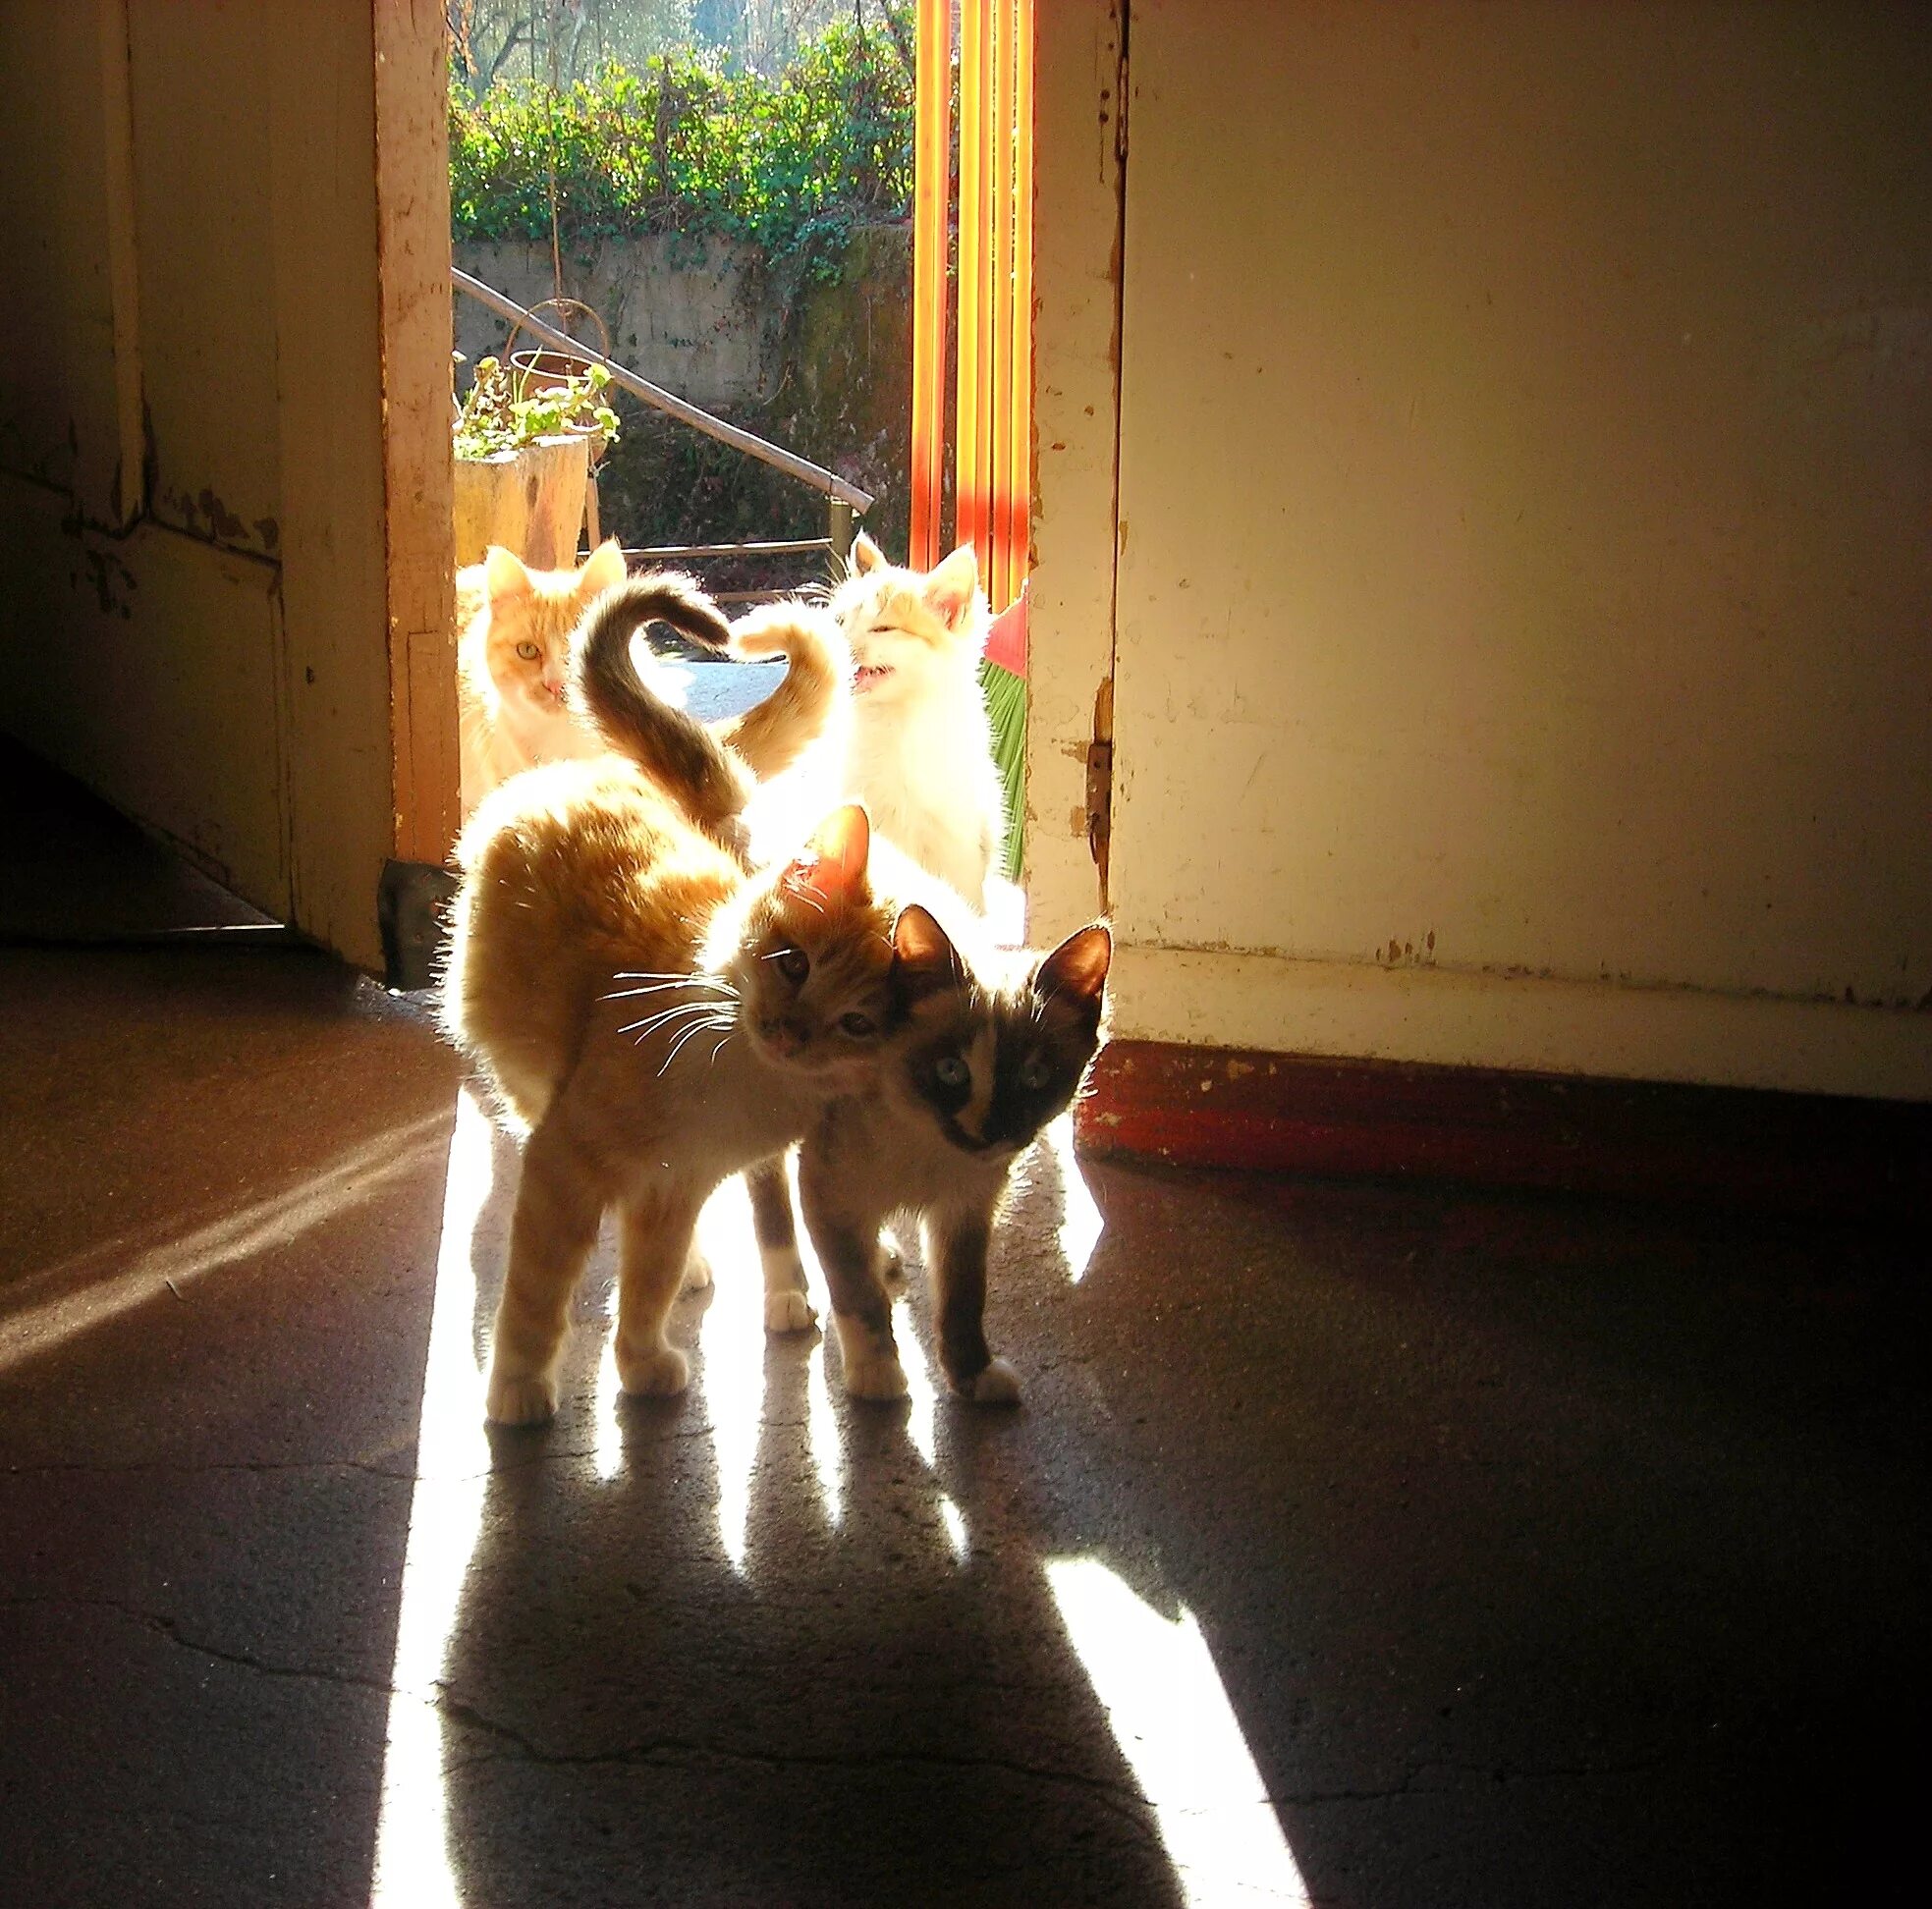 Дом счастливых кошек. Коты с хвостами сердечком. Дом для кошки. Кошачьи хвосты сердечком. Коты с переплетенными хвостами.